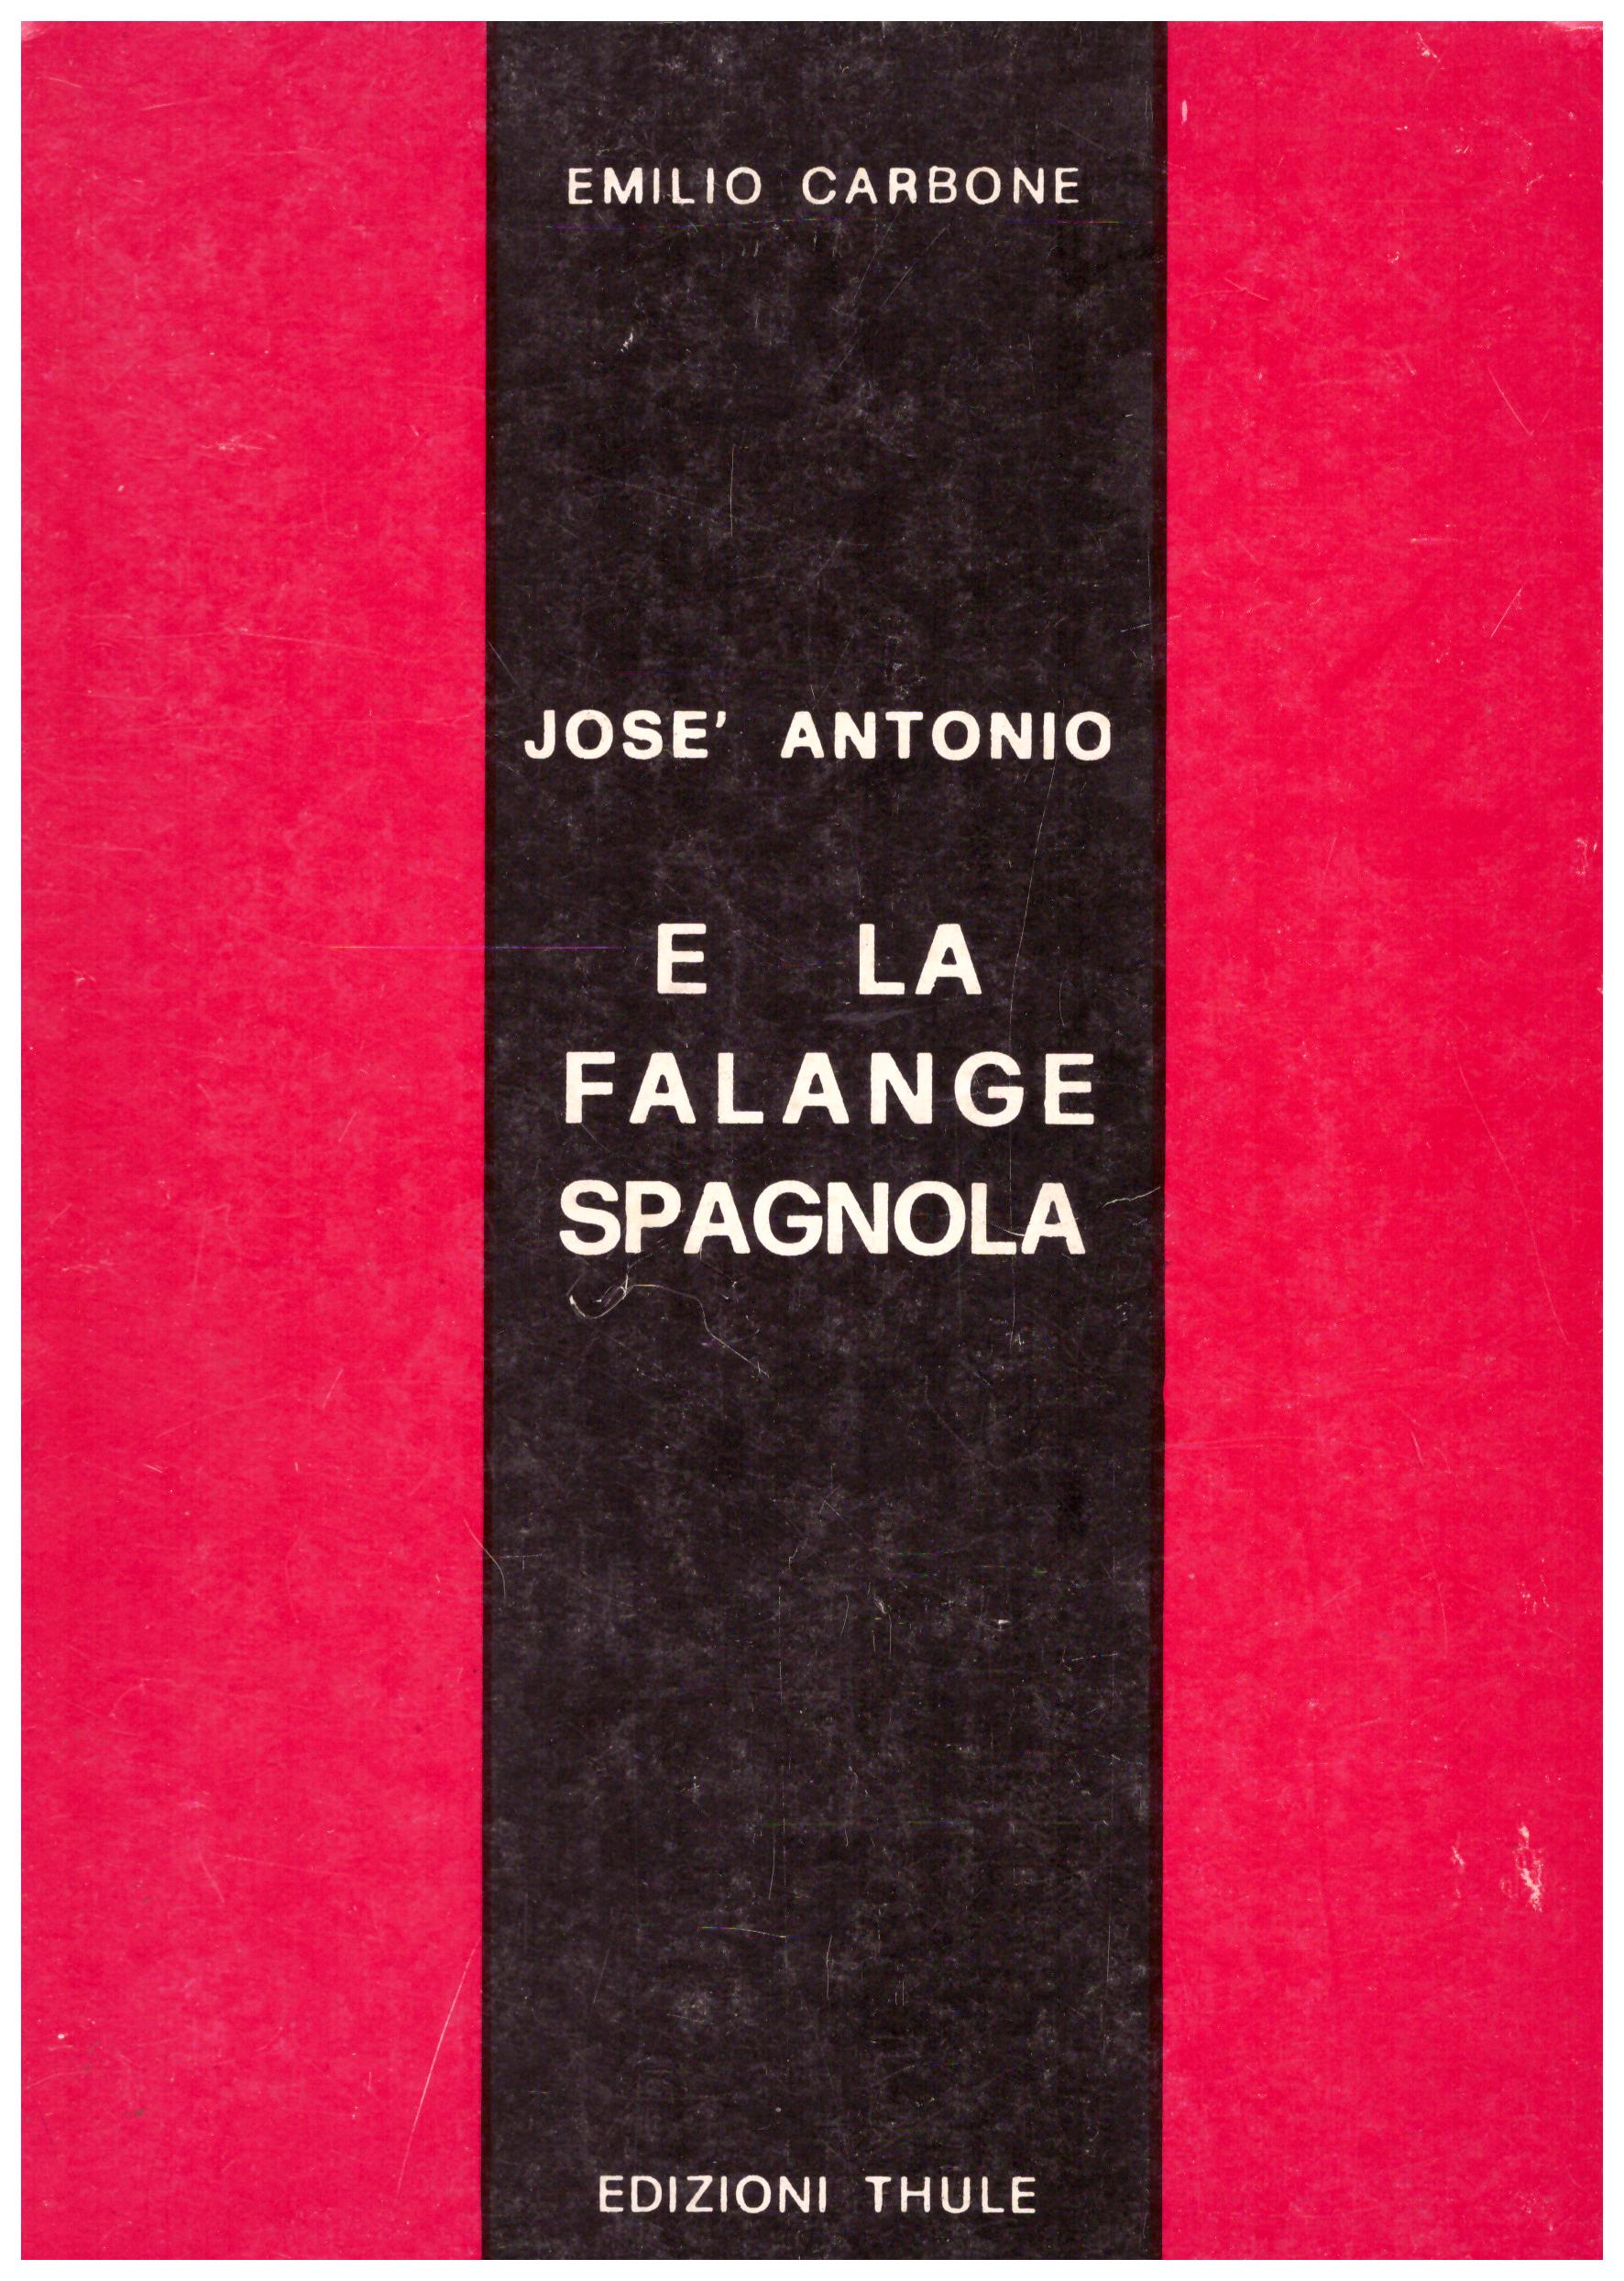 Josè Antonio e la falange spagnola.